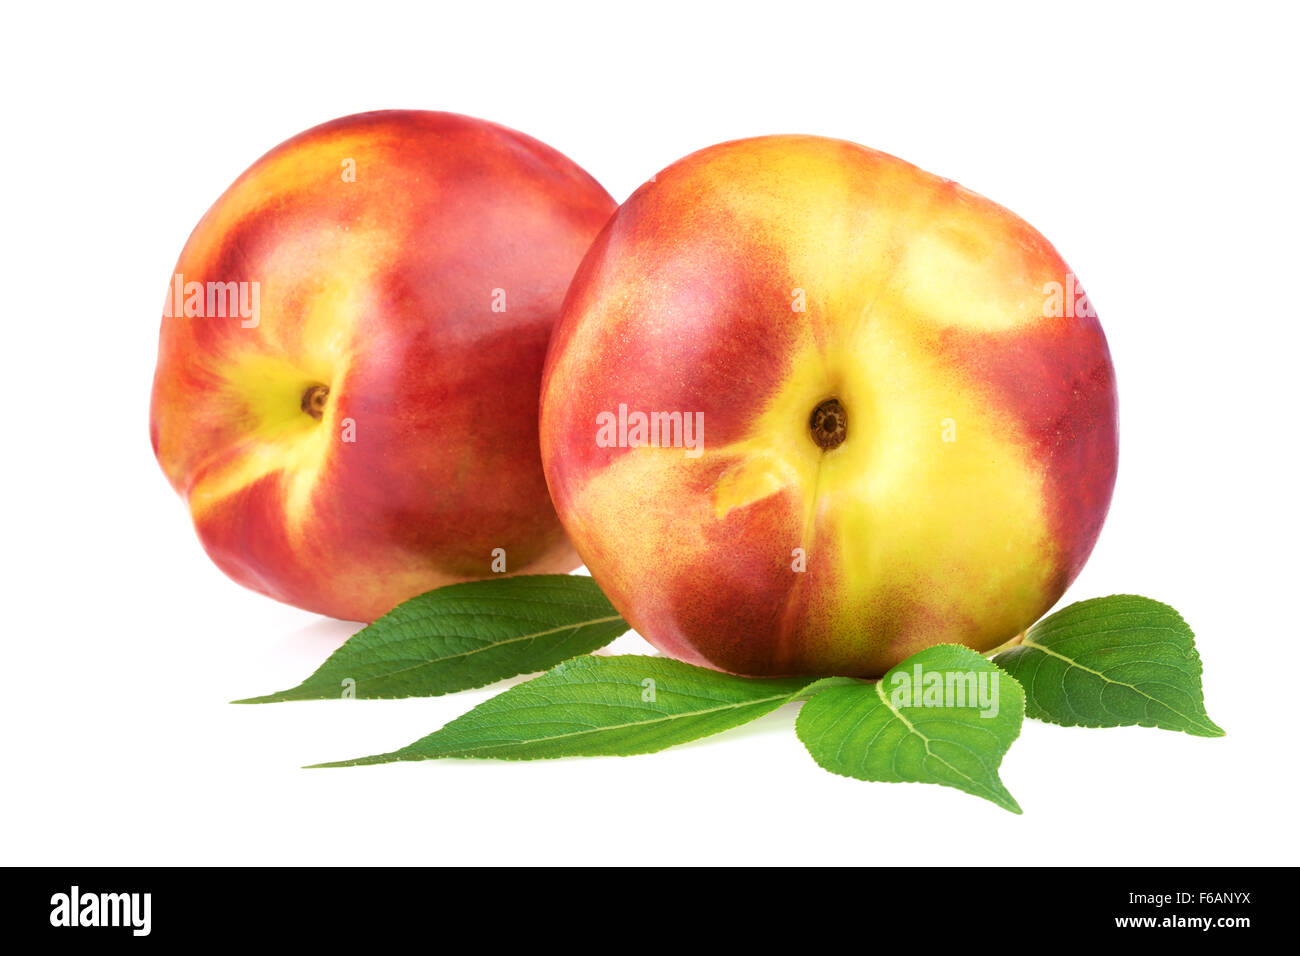 Nectarine Peach Fruits Stock Photo